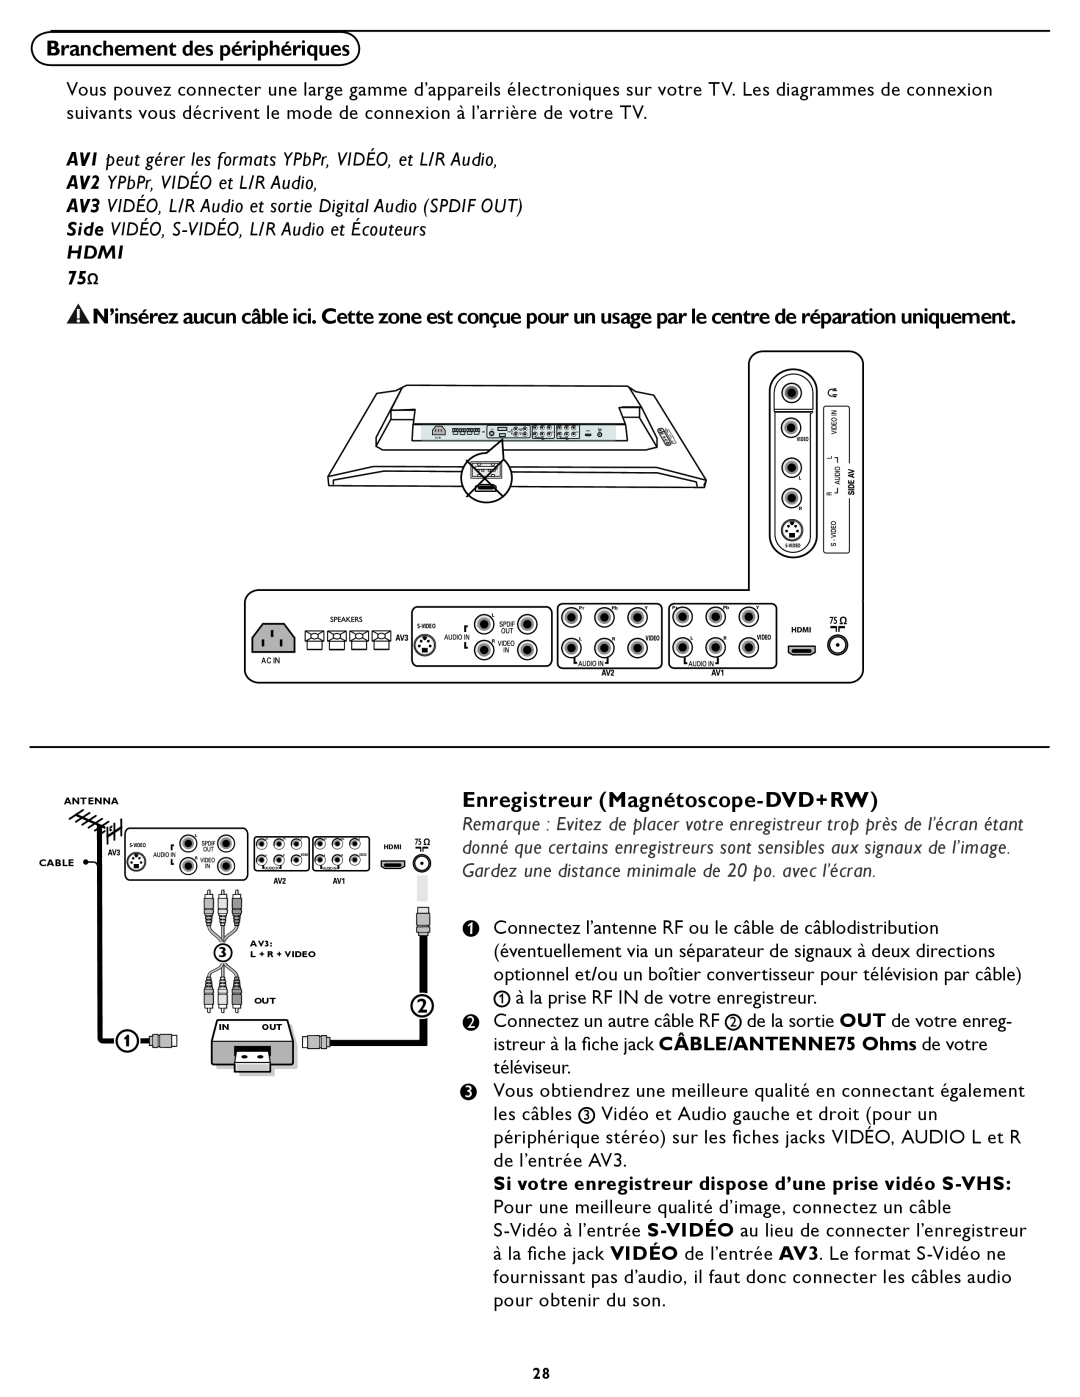 Magnavox 331D Branchement des périphériques, Enregistreur Magnétoscope-DVD+RW, AV2 YPbPr, VIDÉO et L/R Audio, Hdmi, Cable 